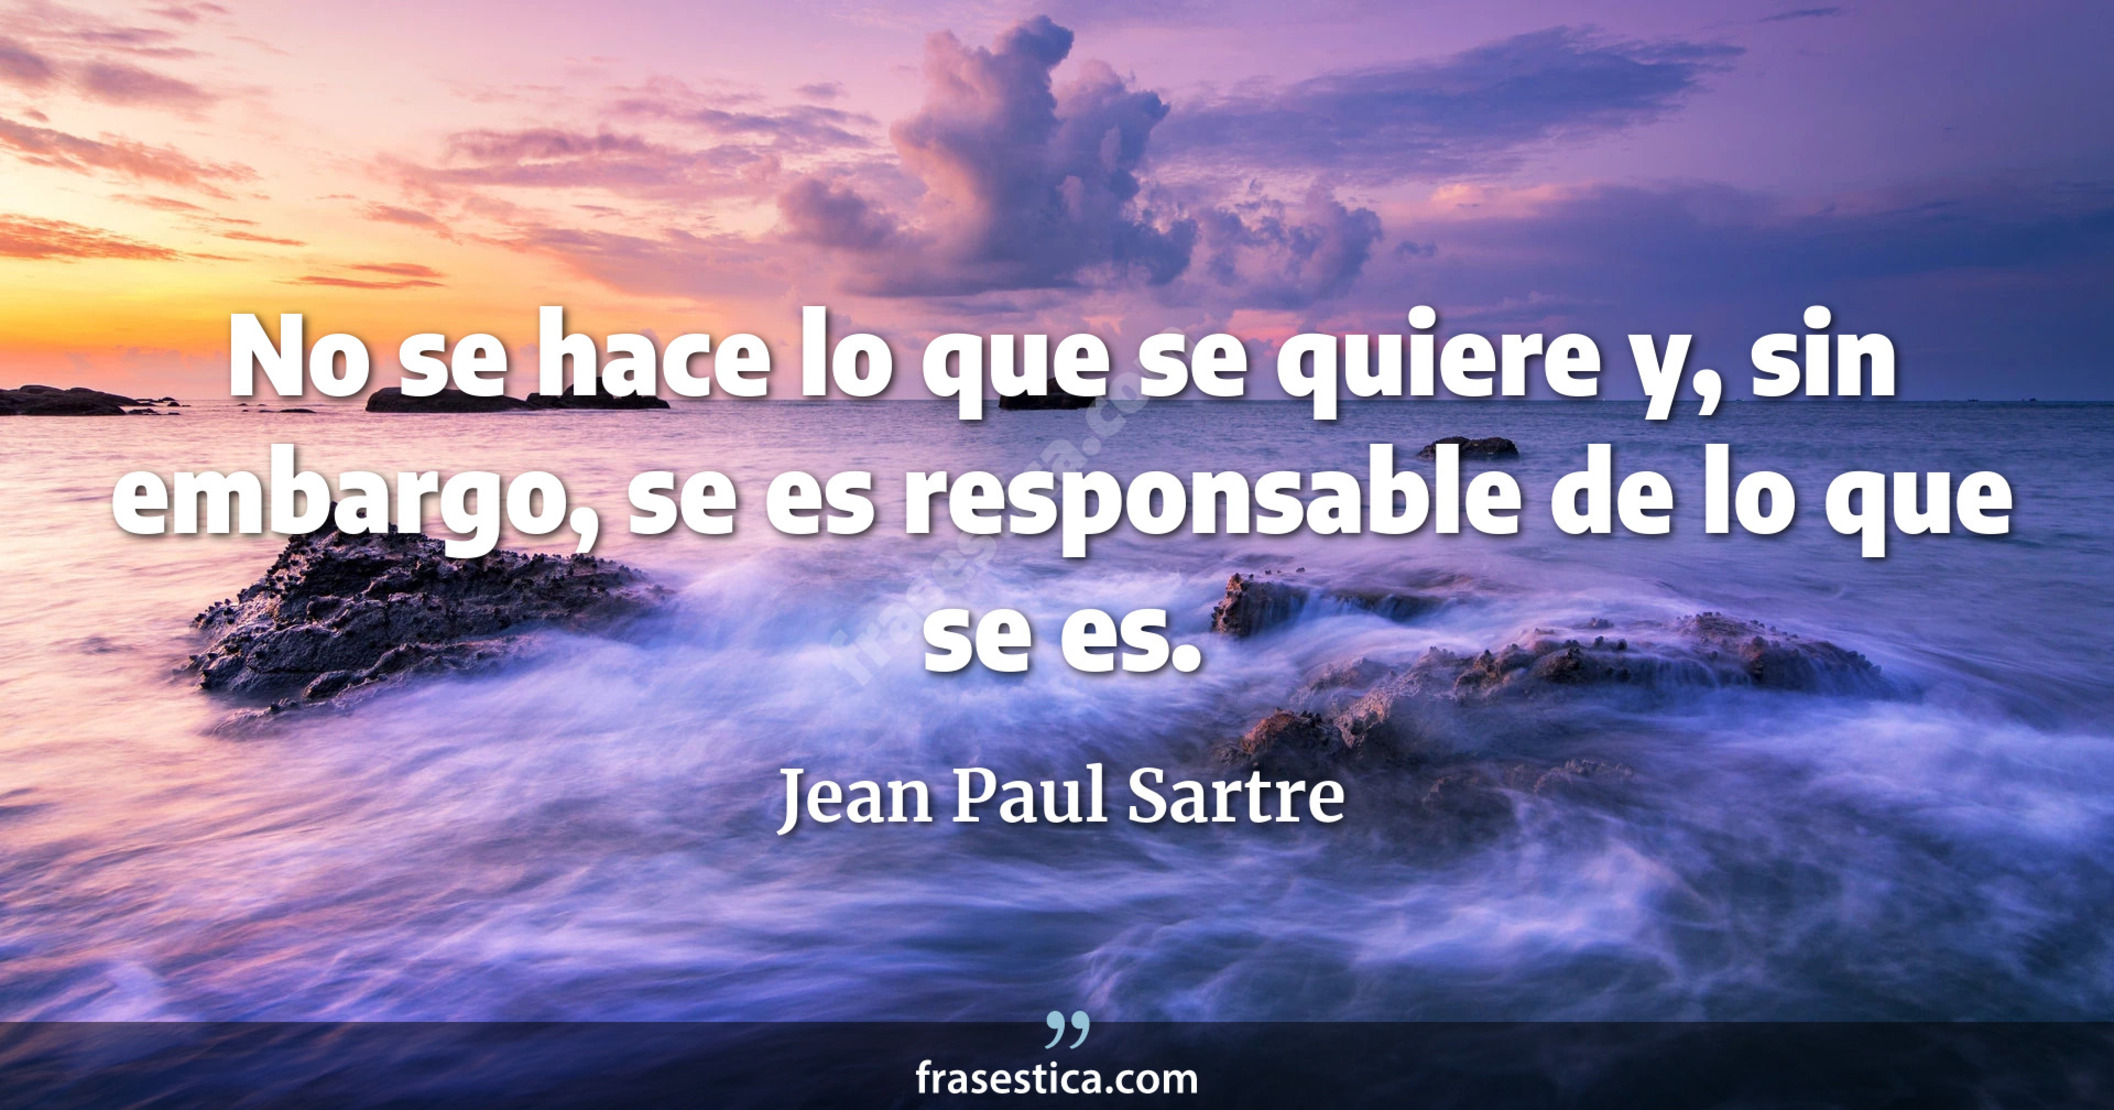 No se hace lo que se quiere y, sin embargo, se es responsable de lo que se es. - Jean Paul Sartre